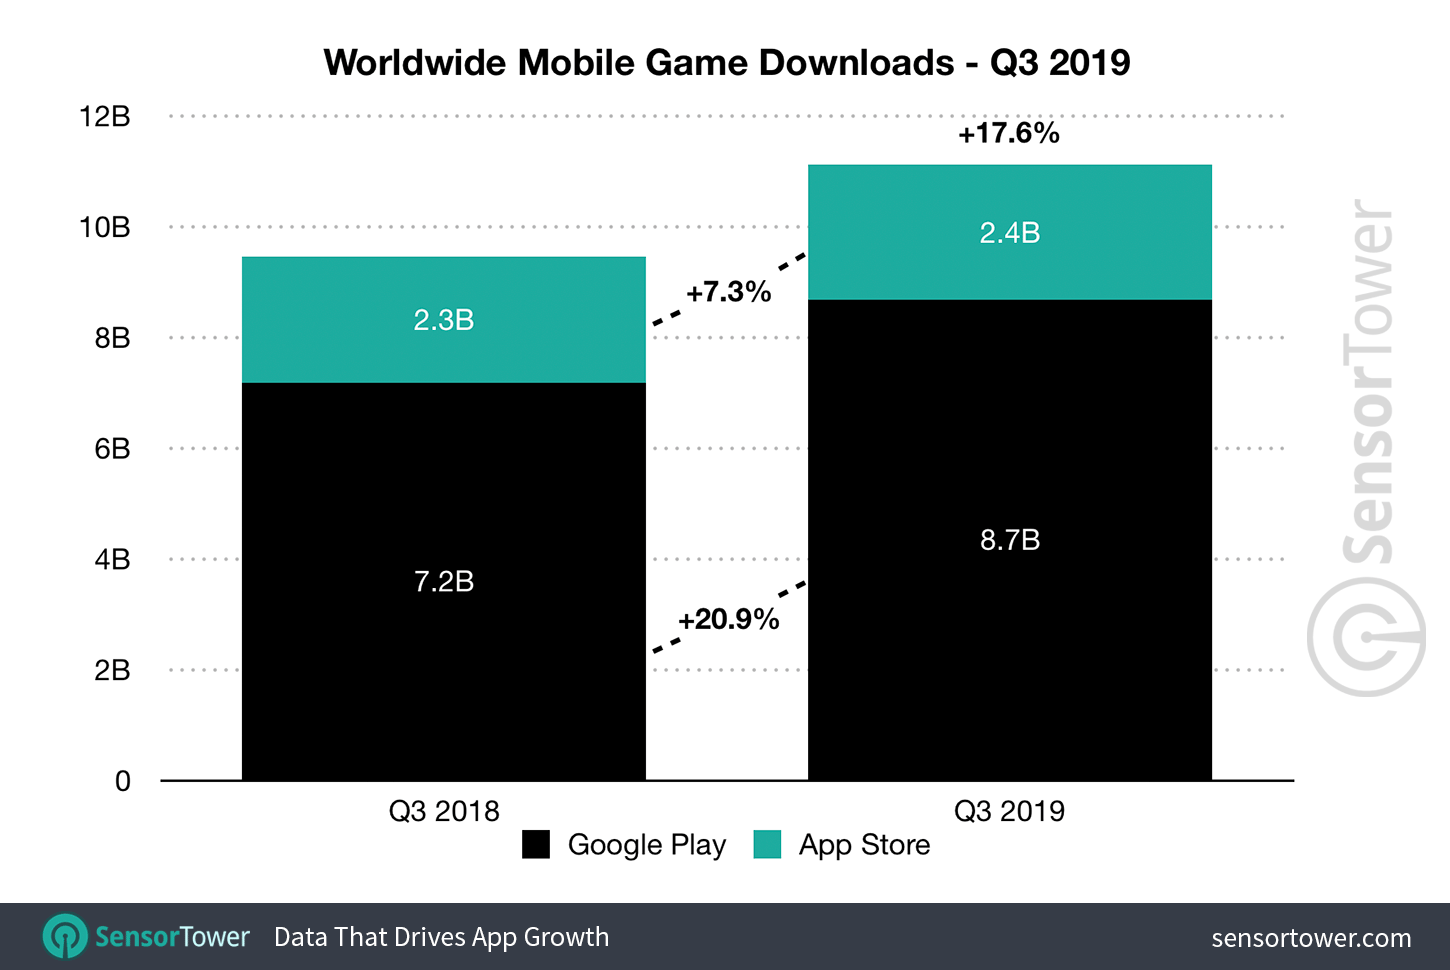 q3 2019 game downloads worldwide